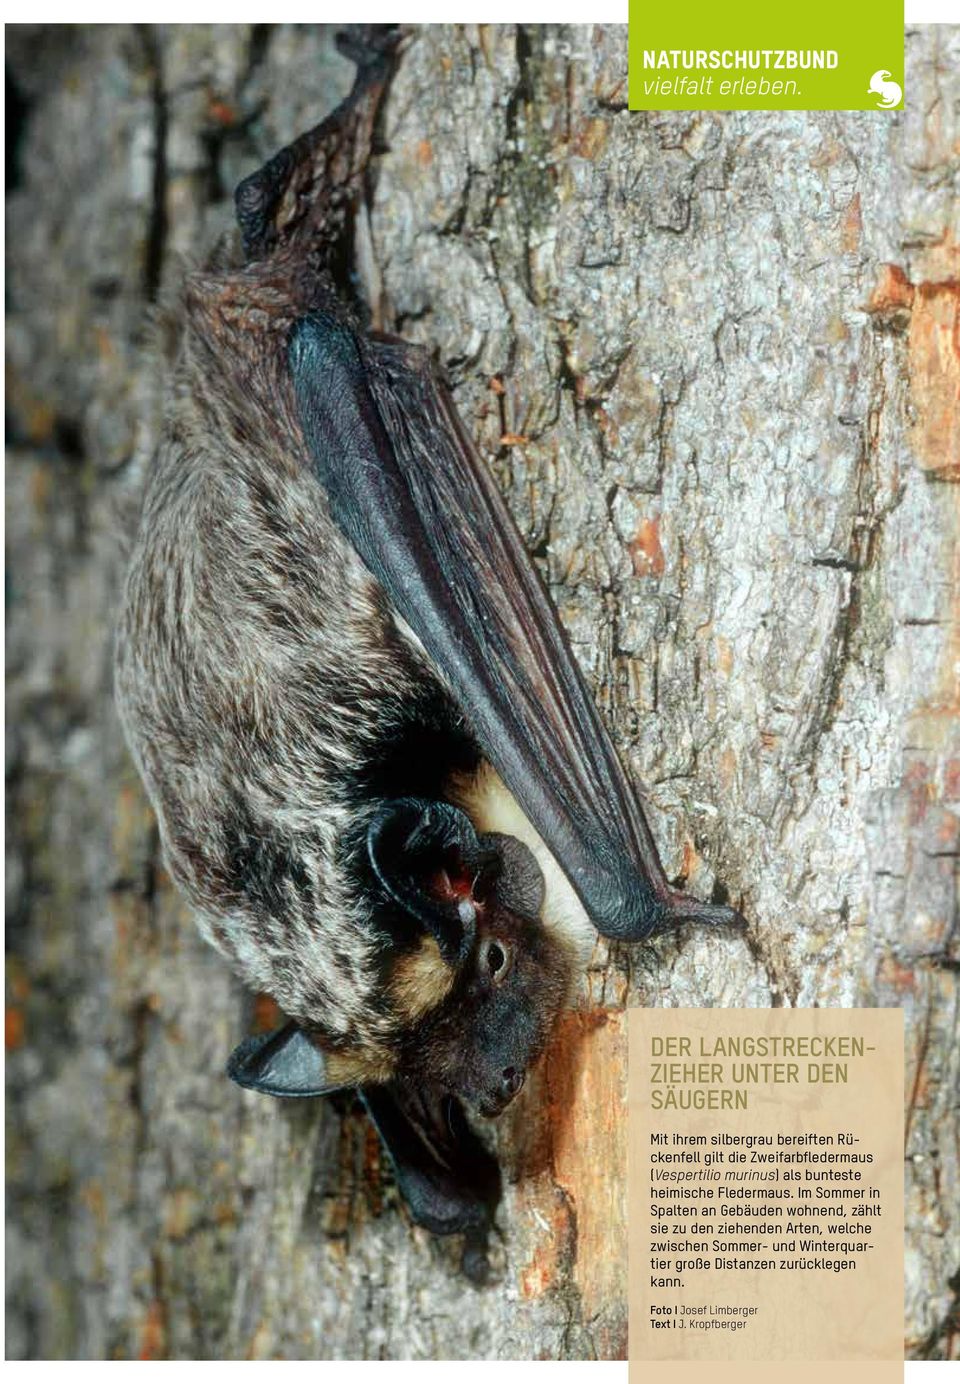 Zweifarbfledermaus (Vespertilio murinus) als bunteste heimische Fledermaus.